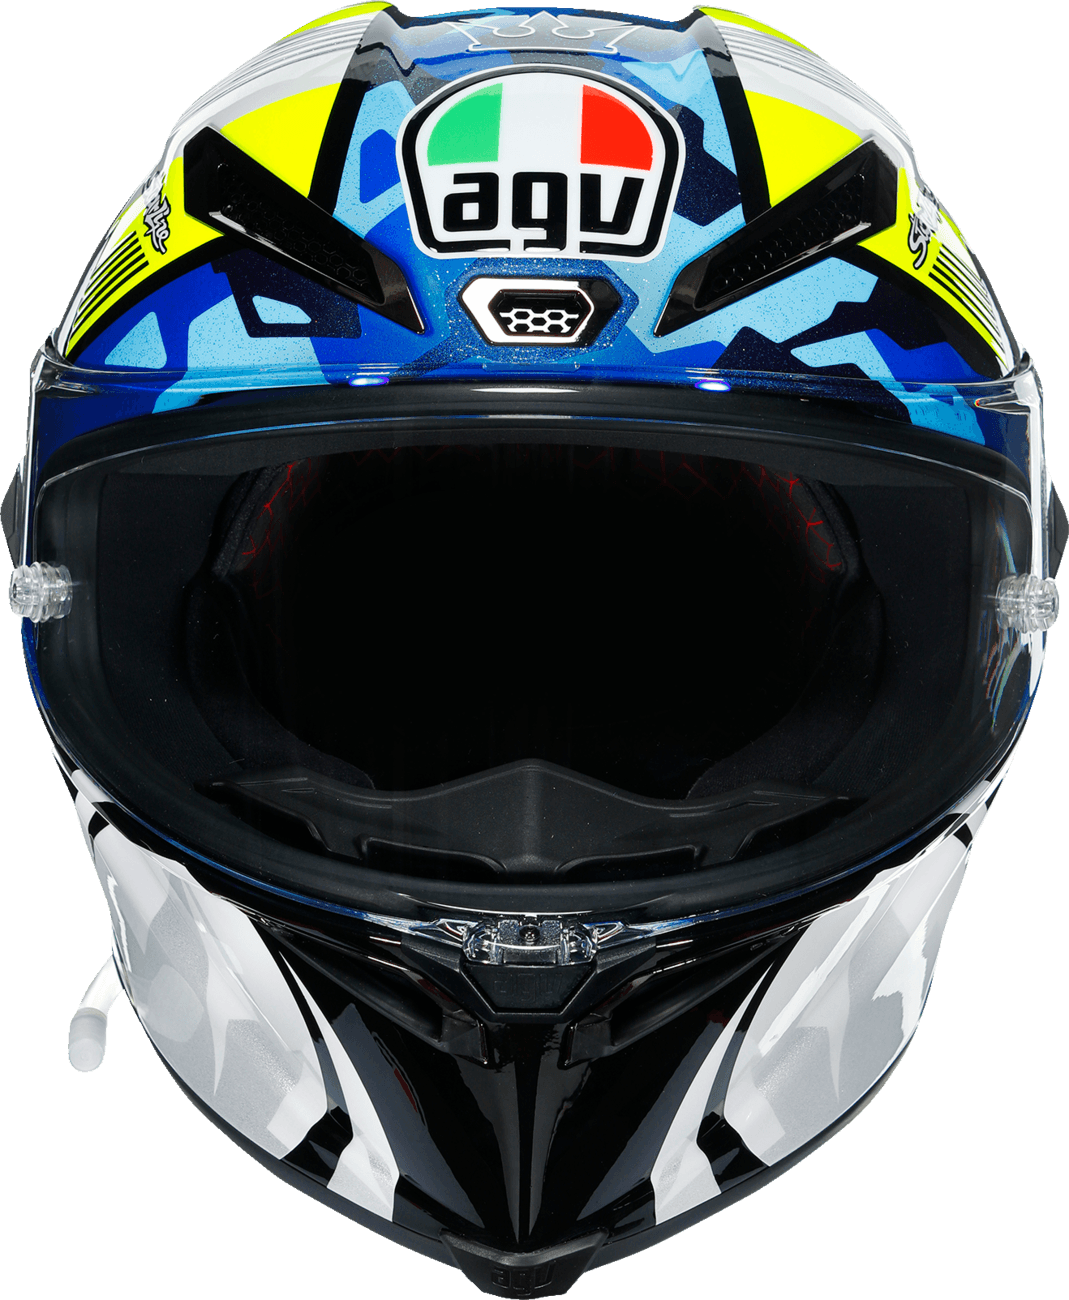 AGV Pista GP RR MIR 2021 Helmet - Motor Psycho Sport